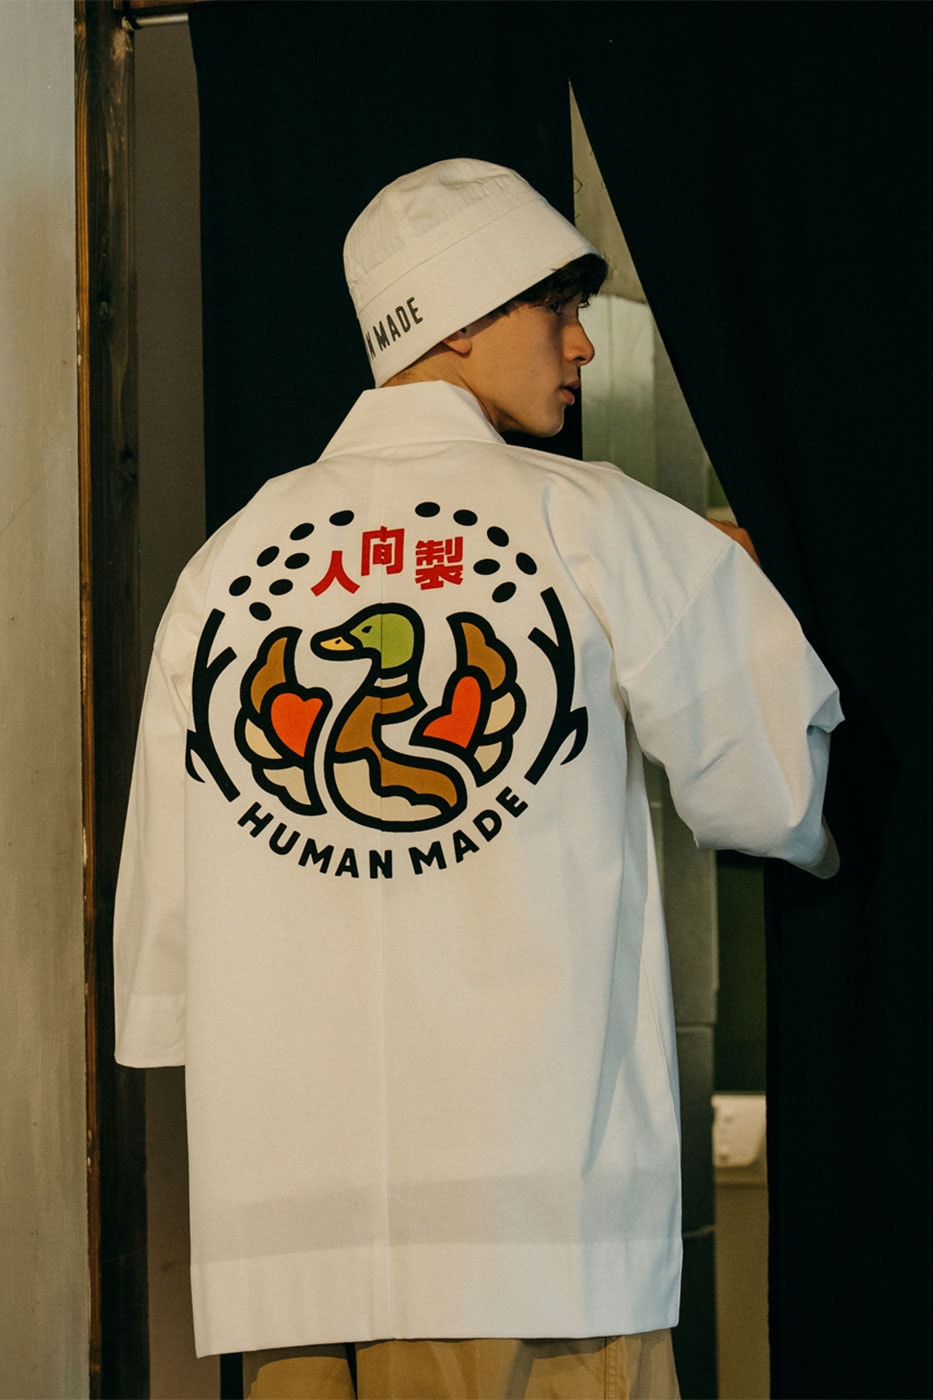 Human Made Ningen-sei Graphic T-Shirt